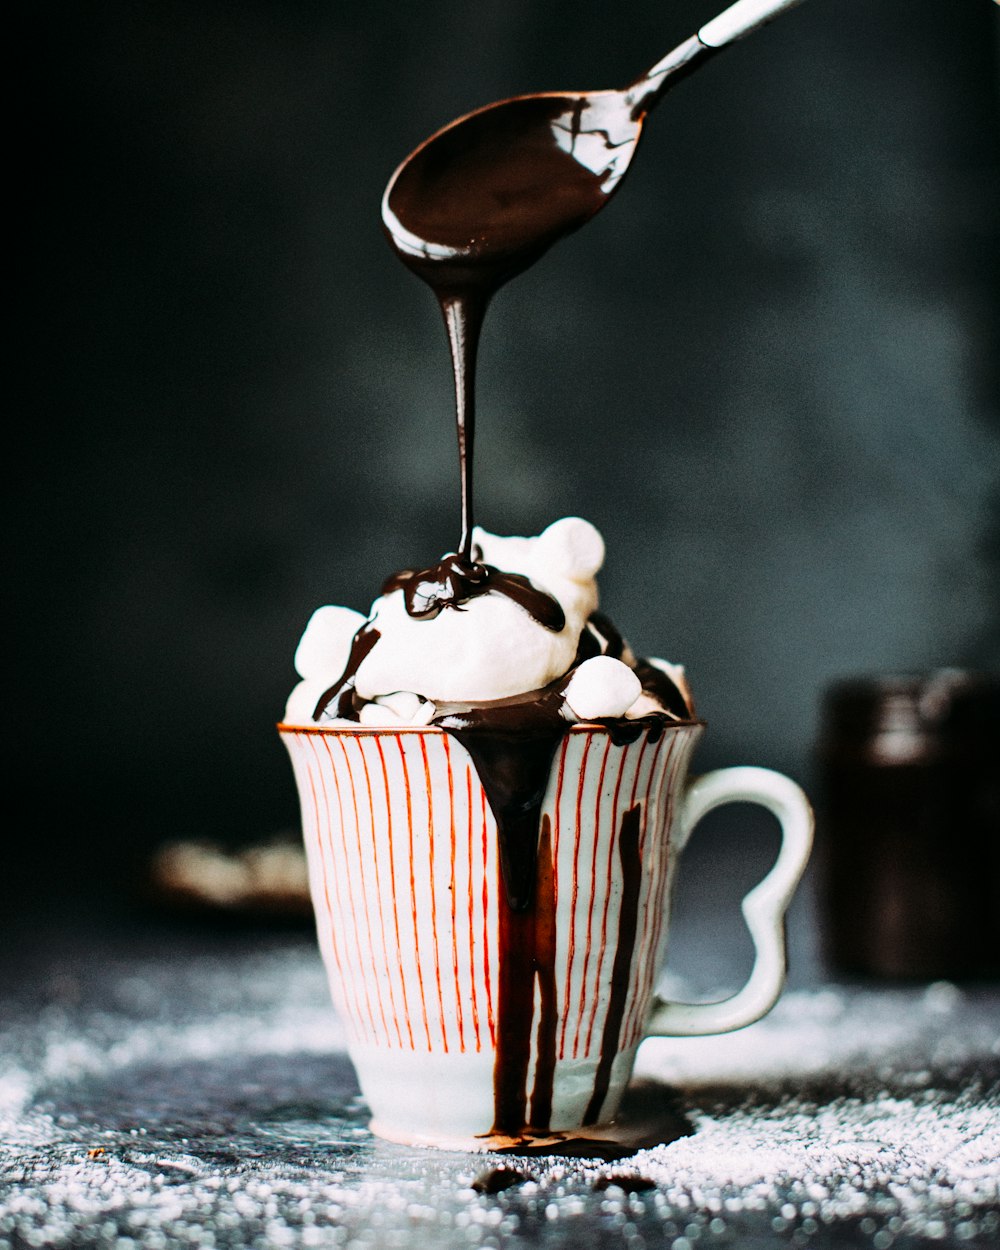 Chocolate vertido sobre helado de vainilla en taza de cerámica